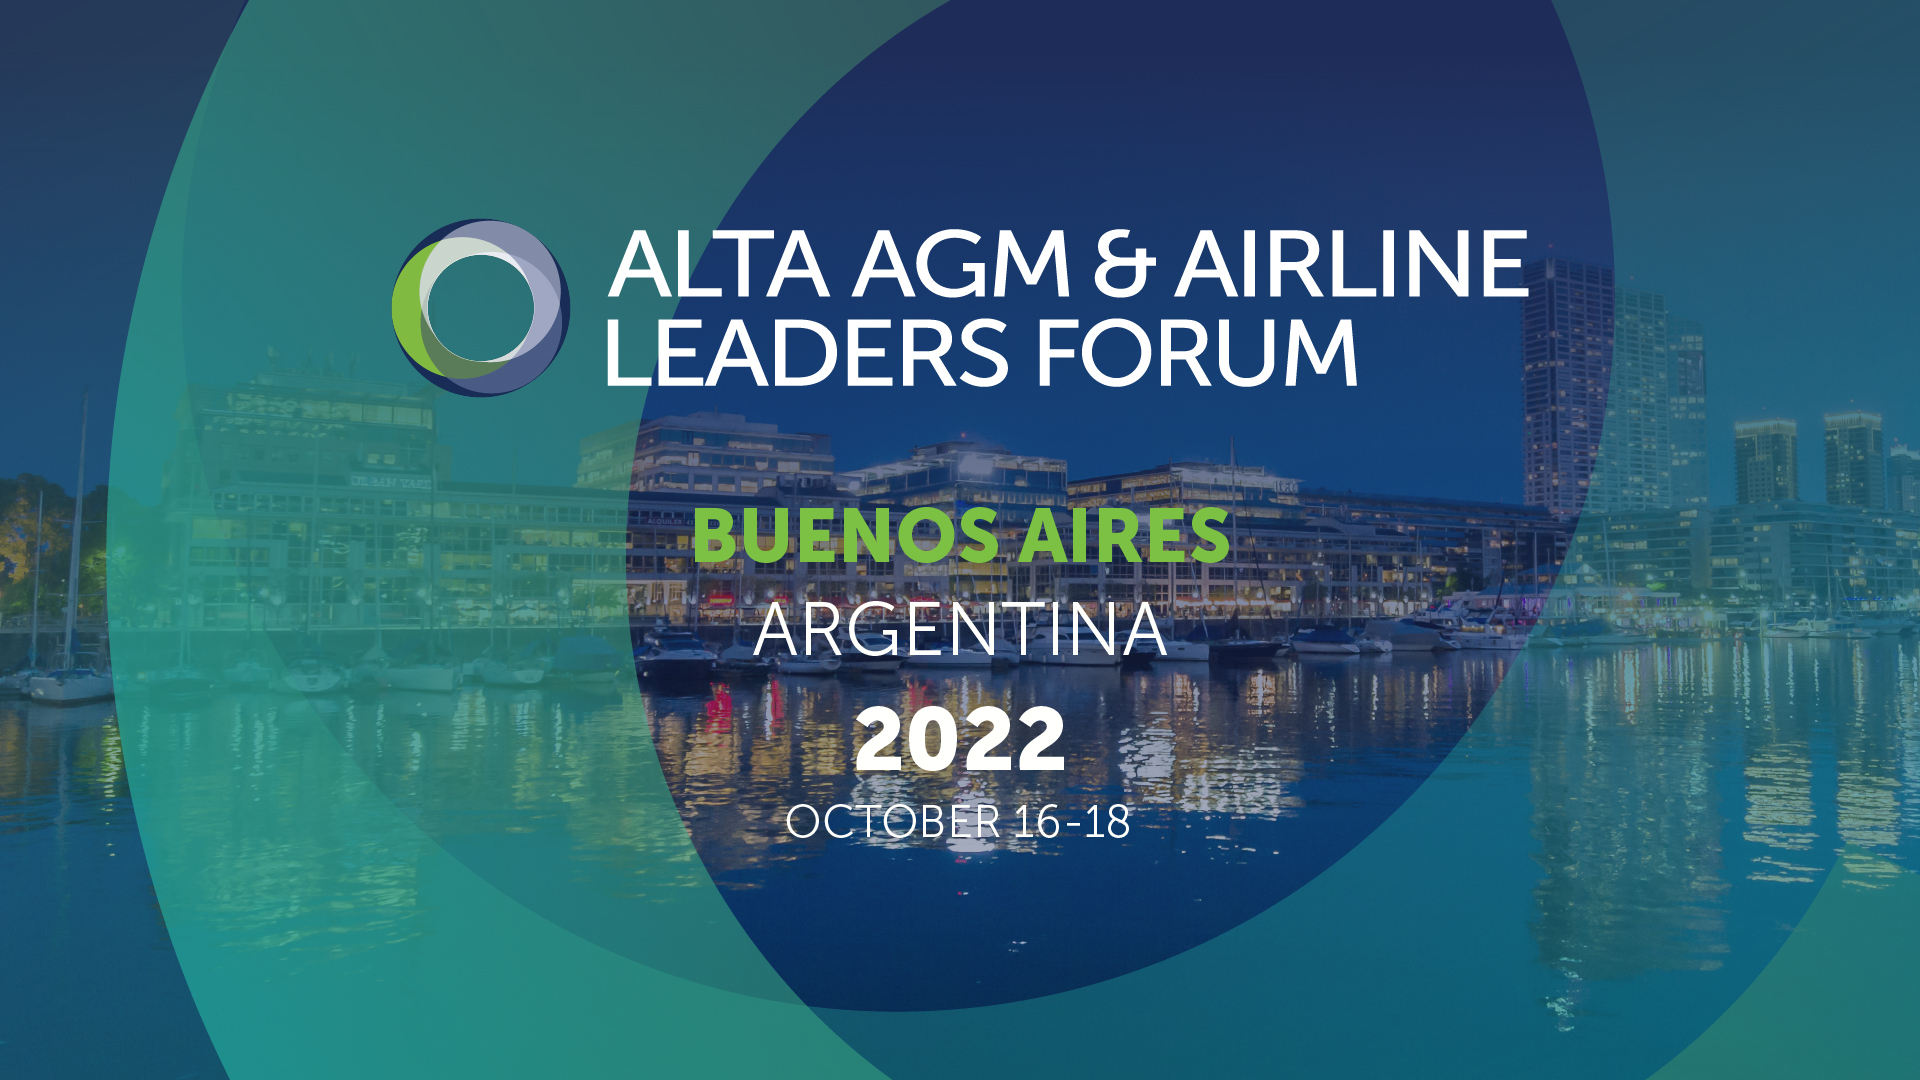 ALTA NEWS - O CEO da Avianca, Adrian neuhauser, é eleito Presidente do Comitê Executivo da ALTA